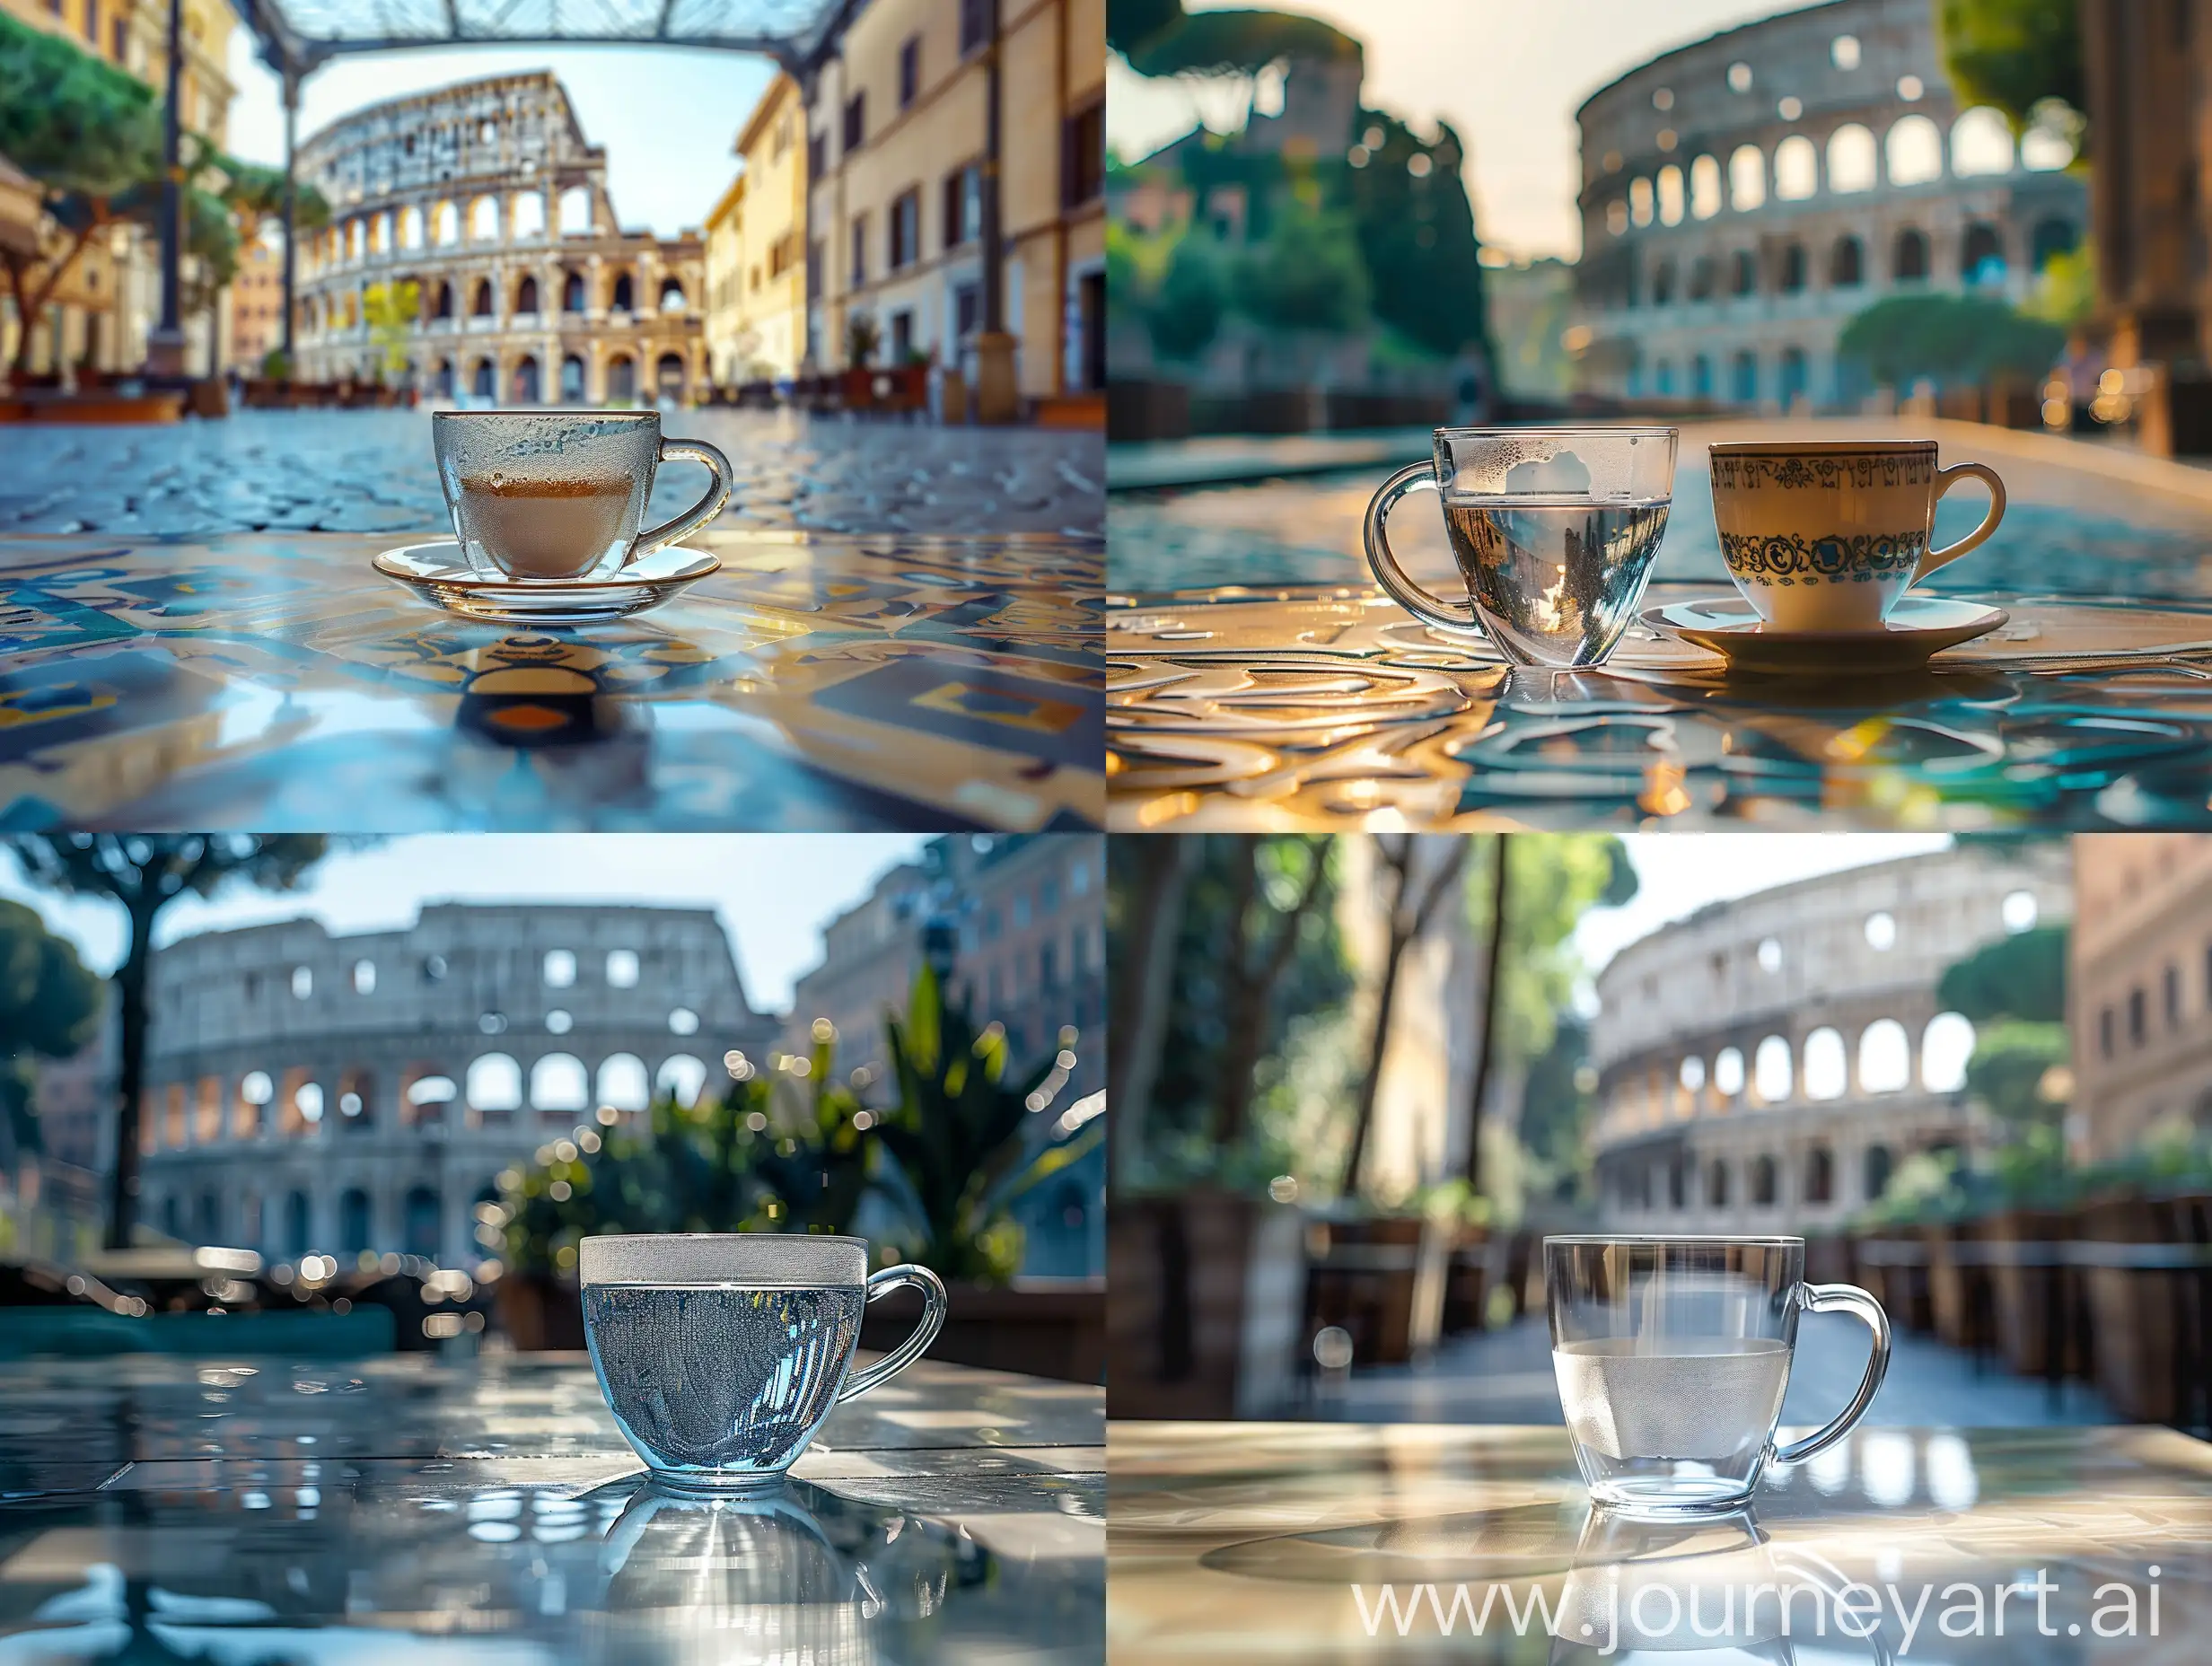 Рекламная фотография прозрачная чашка кофе на столике в кофейне на фоне Колизея в  Италии, вид спереди, студийная съемка с помощью цифровой зеркальной камеры Canon и микрообъектива IF-ED VR 105 мм f/2,8G, фотореалистичная, снимок с земли, естественное освещение, глубина резкости, макросъемка пейзажа — q 0,5 — s 250